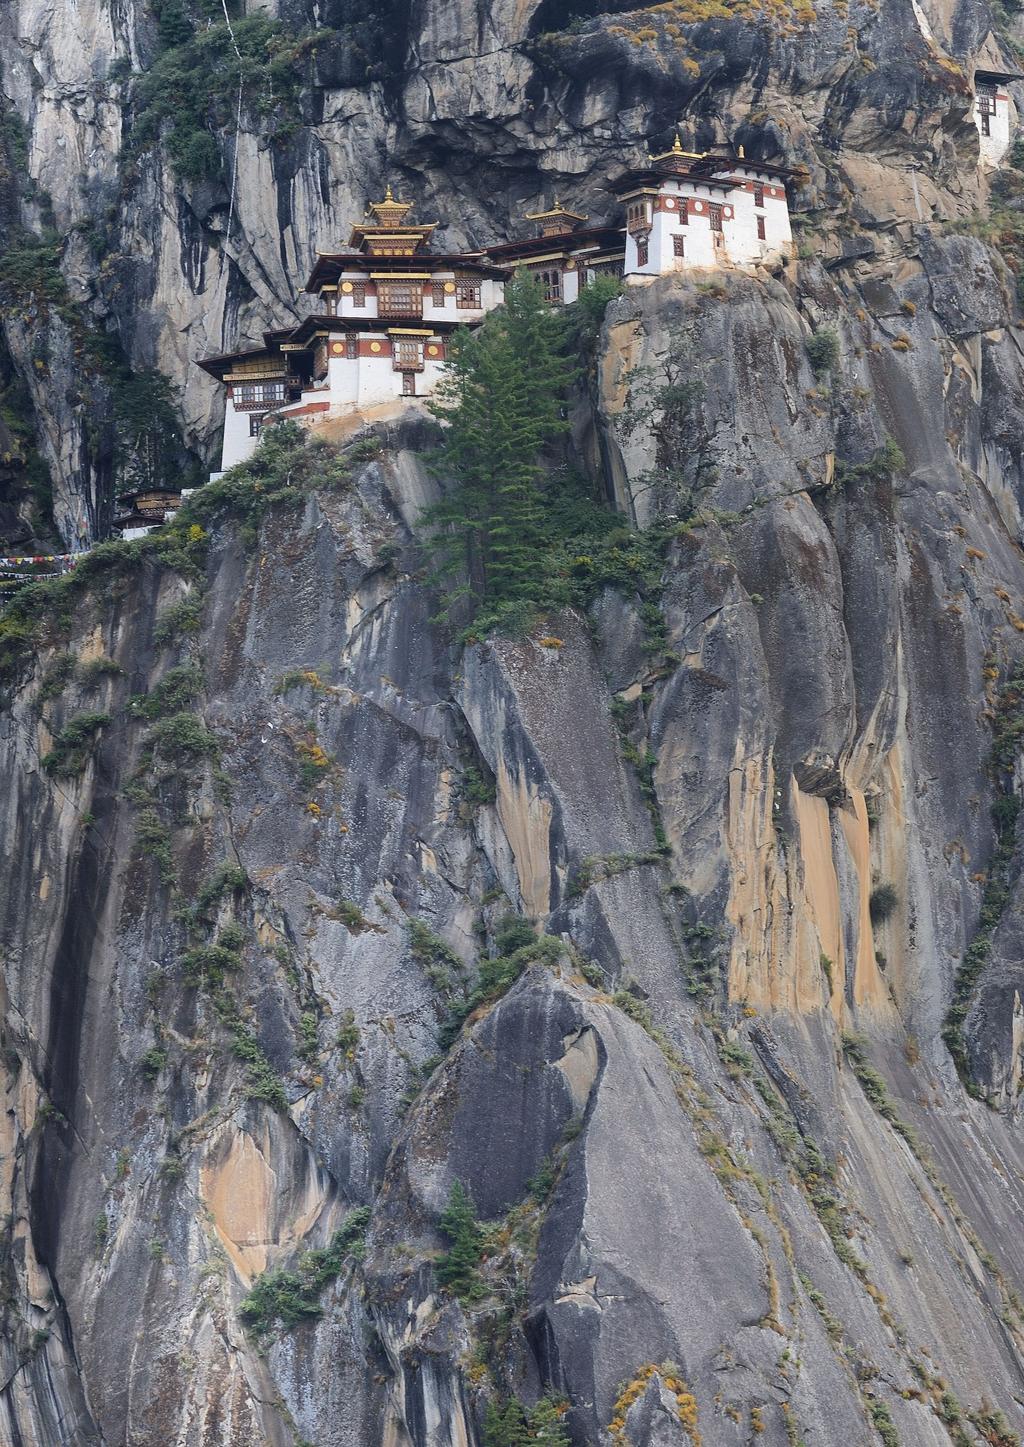 I -doświadczenie II- dolina bhumtang Soul Travel proponuje autorski program w oparciu o własne sześcioletnie doświadczenie podróżnicze w Bhutanie.